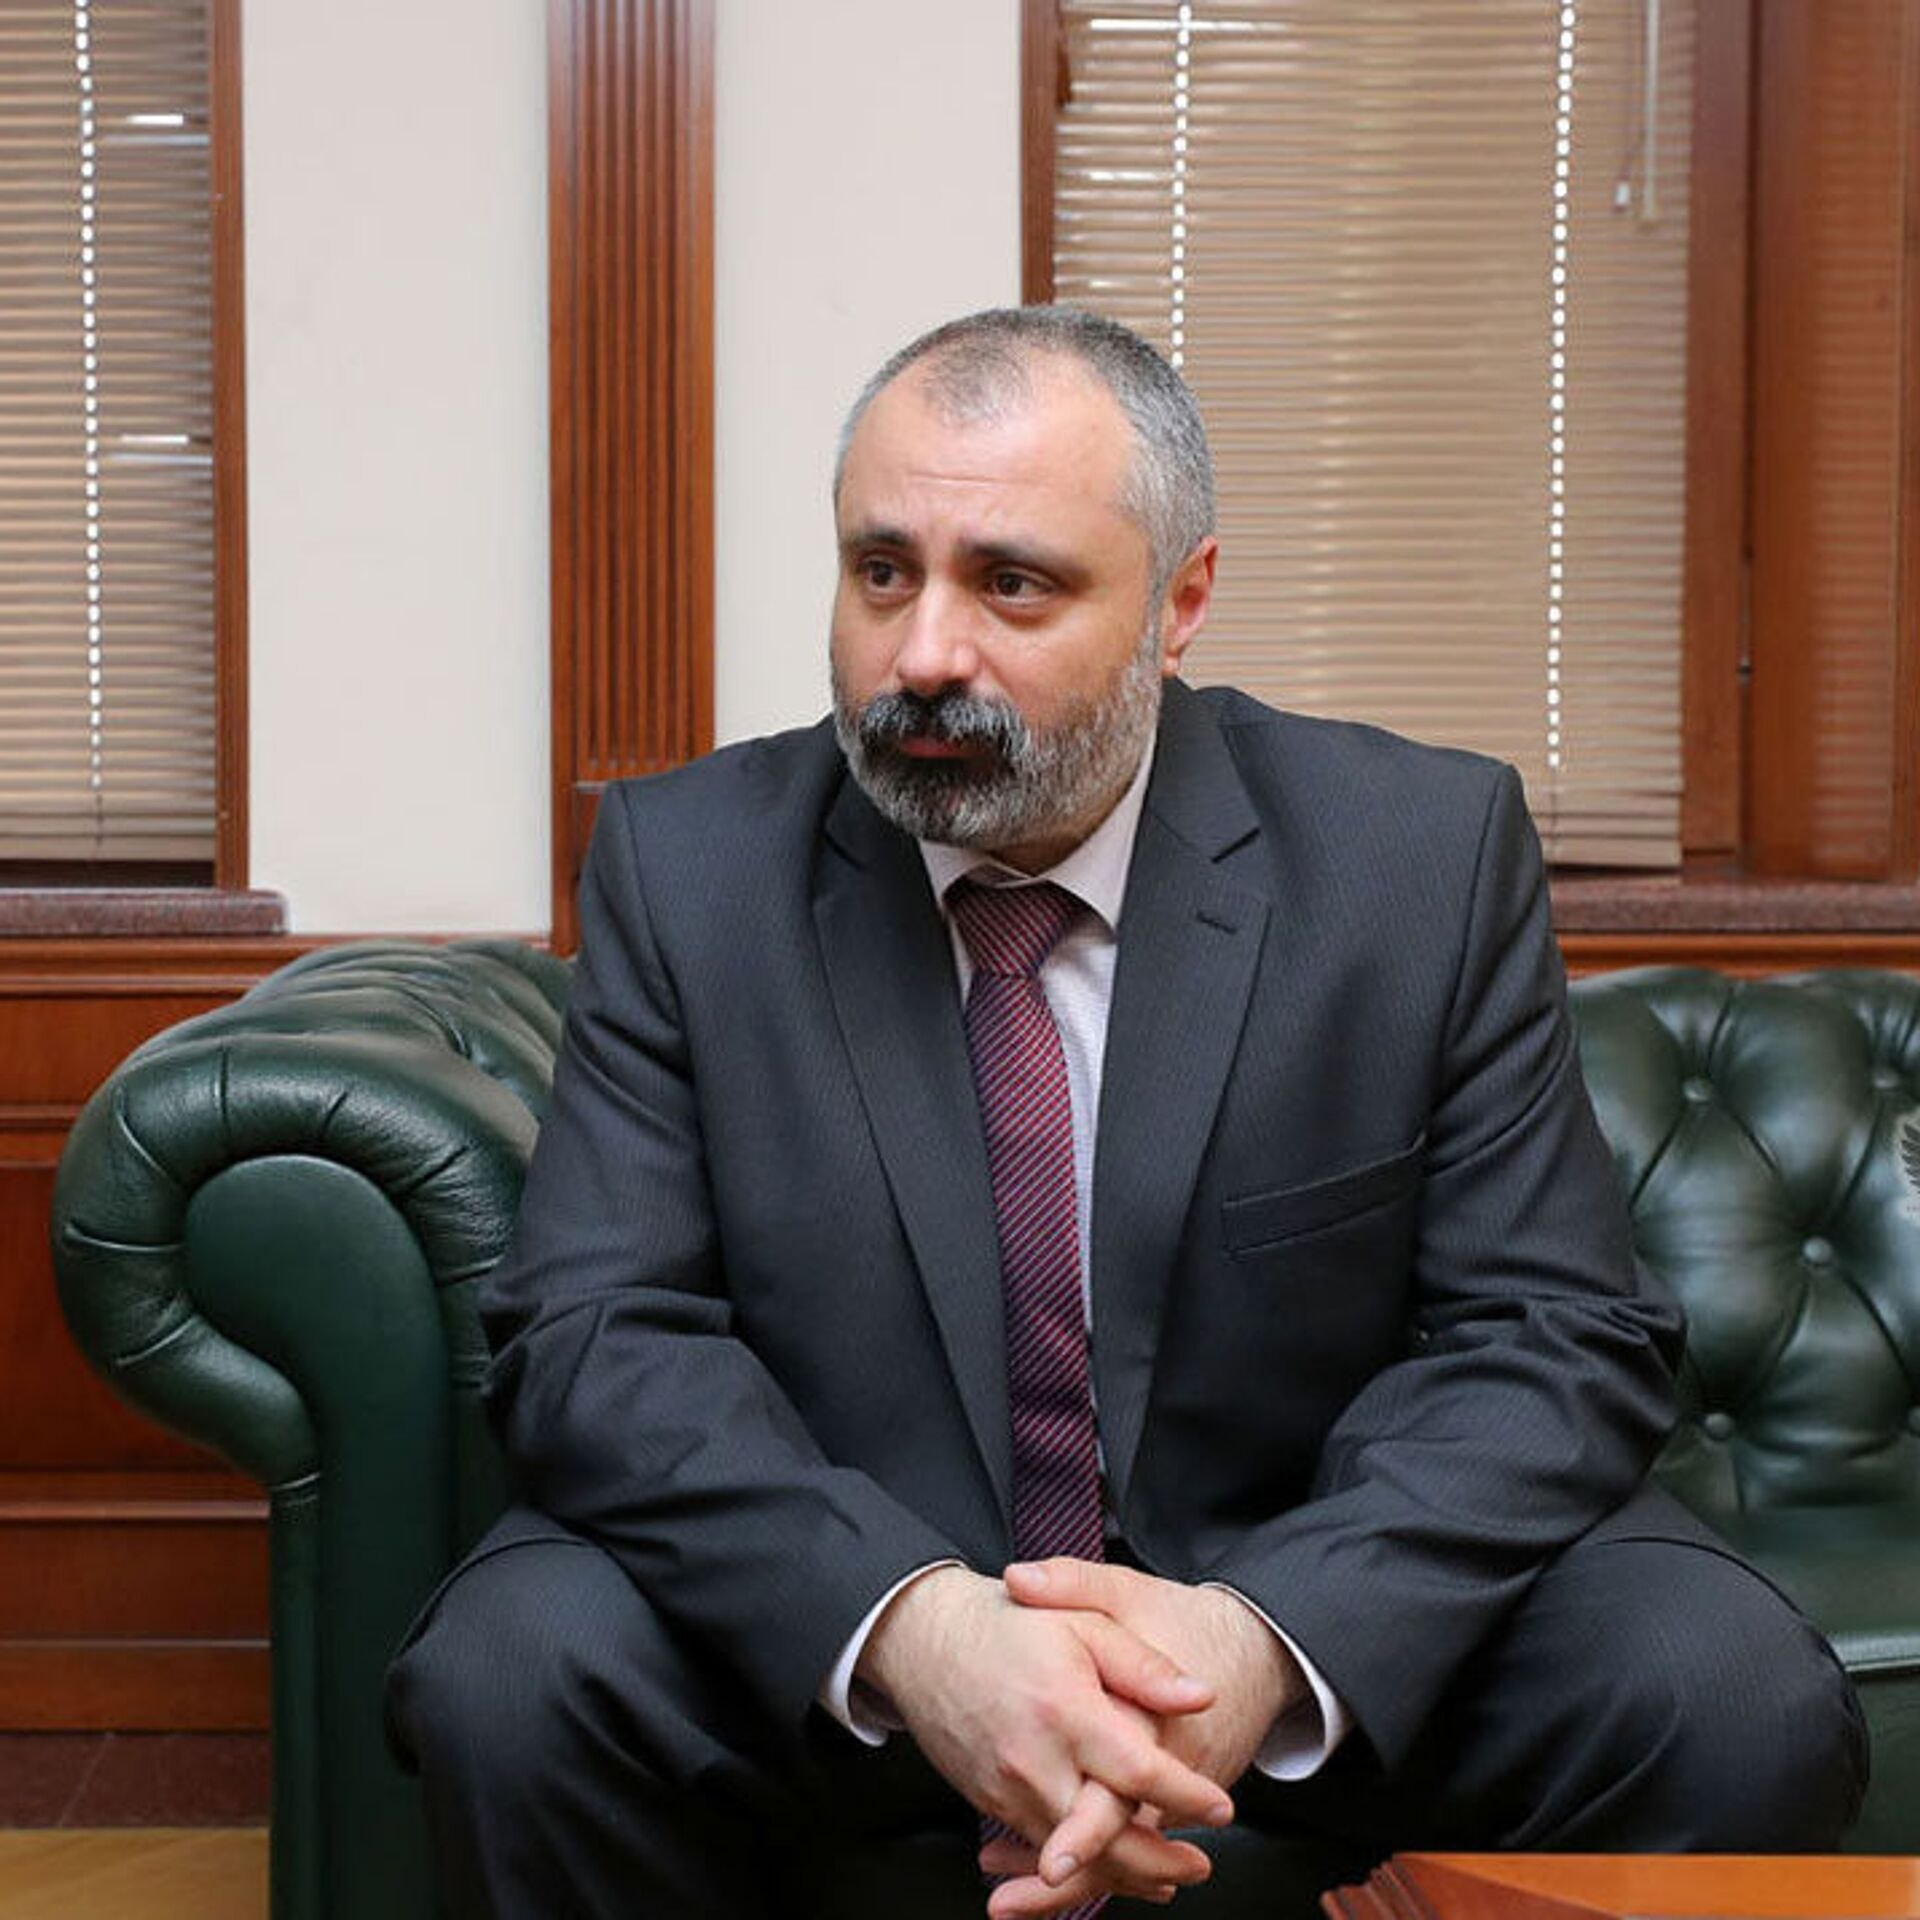 Давид Бабаян решил сдаться правоохранительным органам Азербайджана